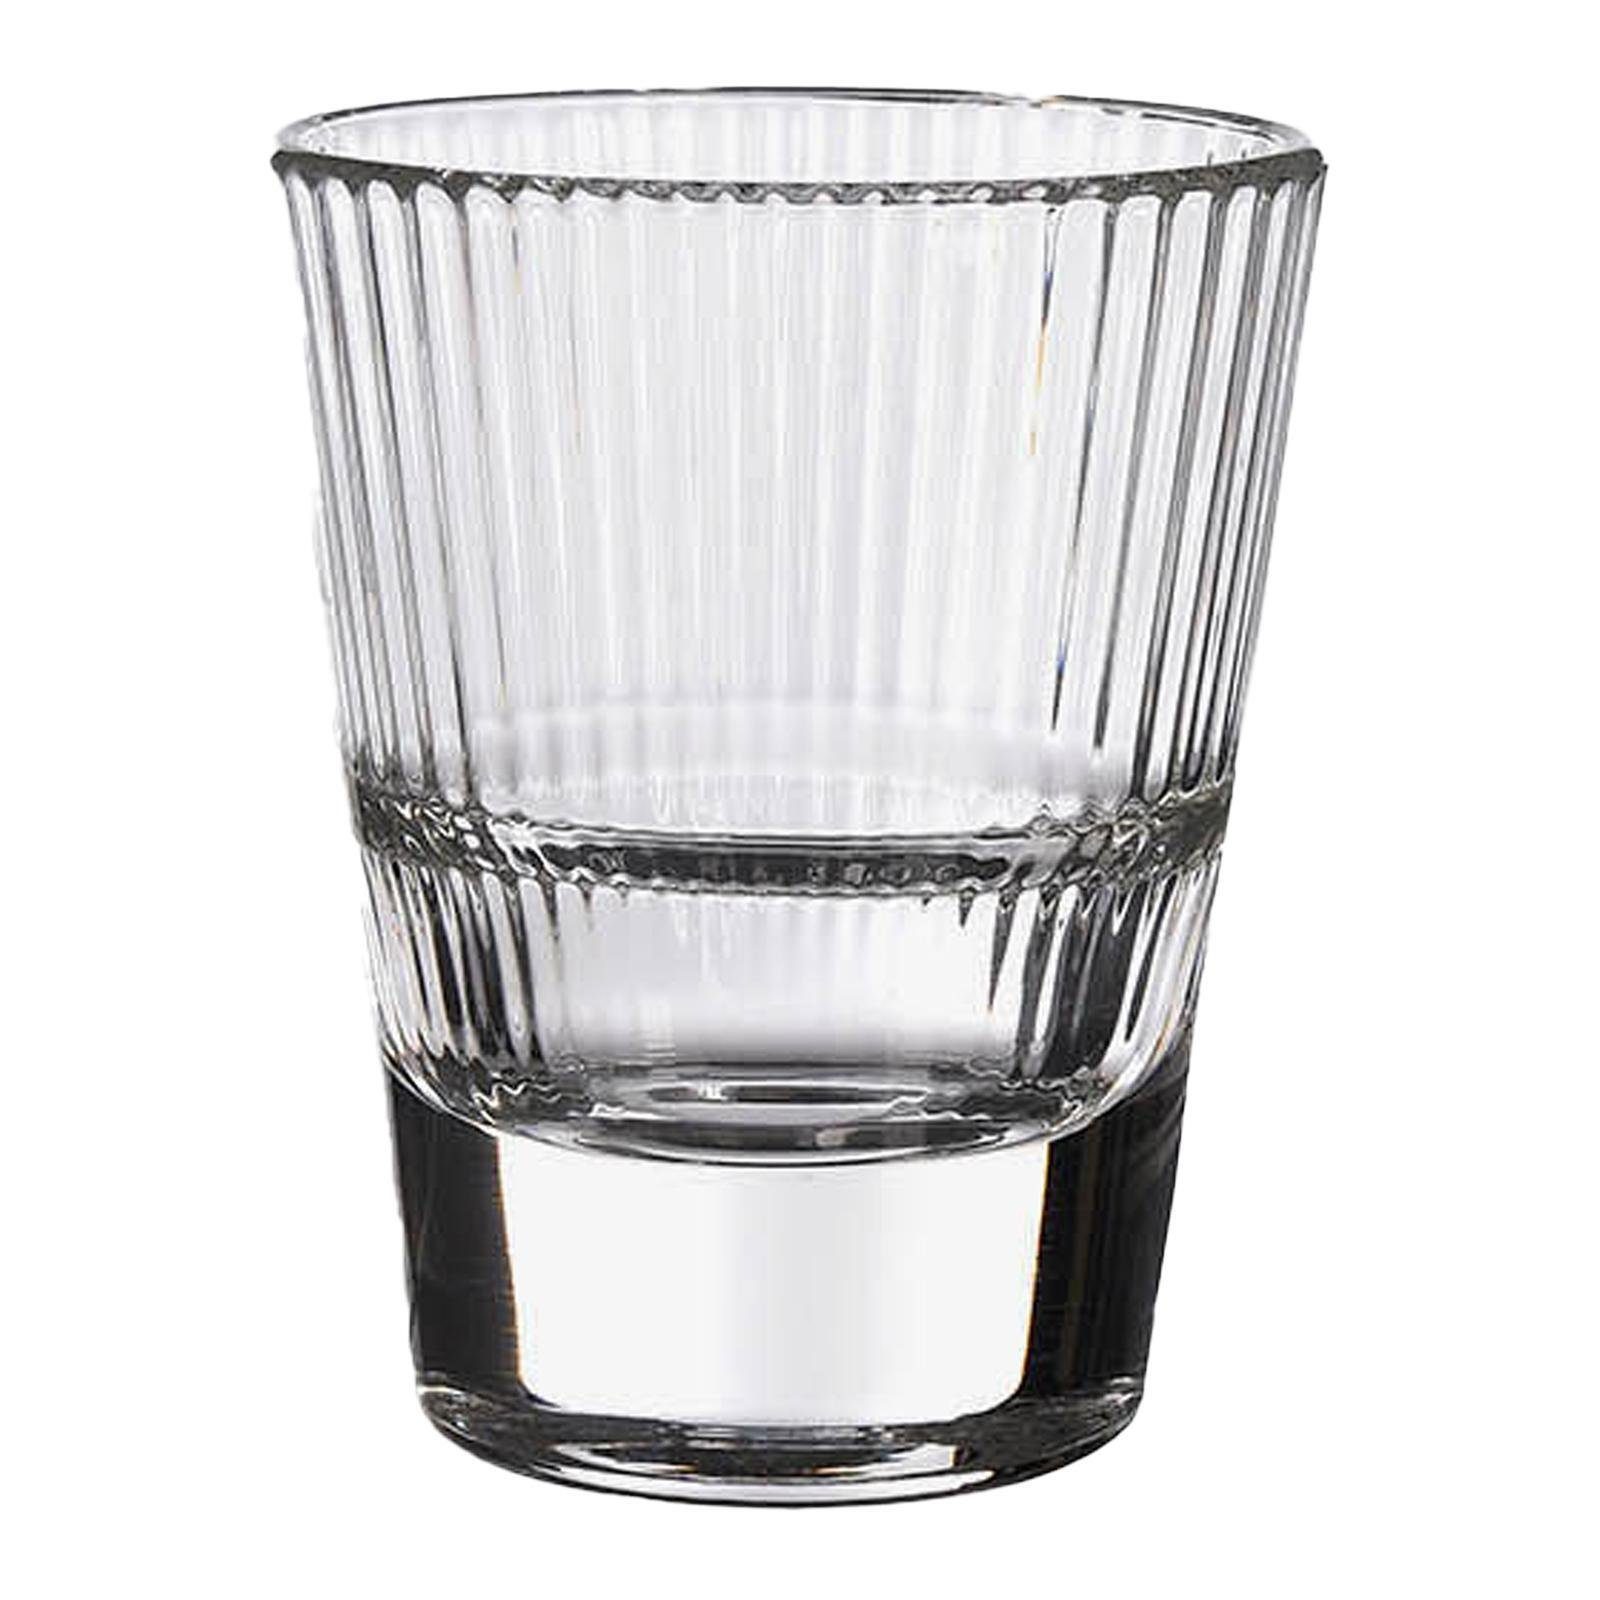 Depot Schnapsglas Schnapsglas Optik, 100% Glas, aus Glas, Ø 5.5 Zentimeter,  H 7 Zentimeter